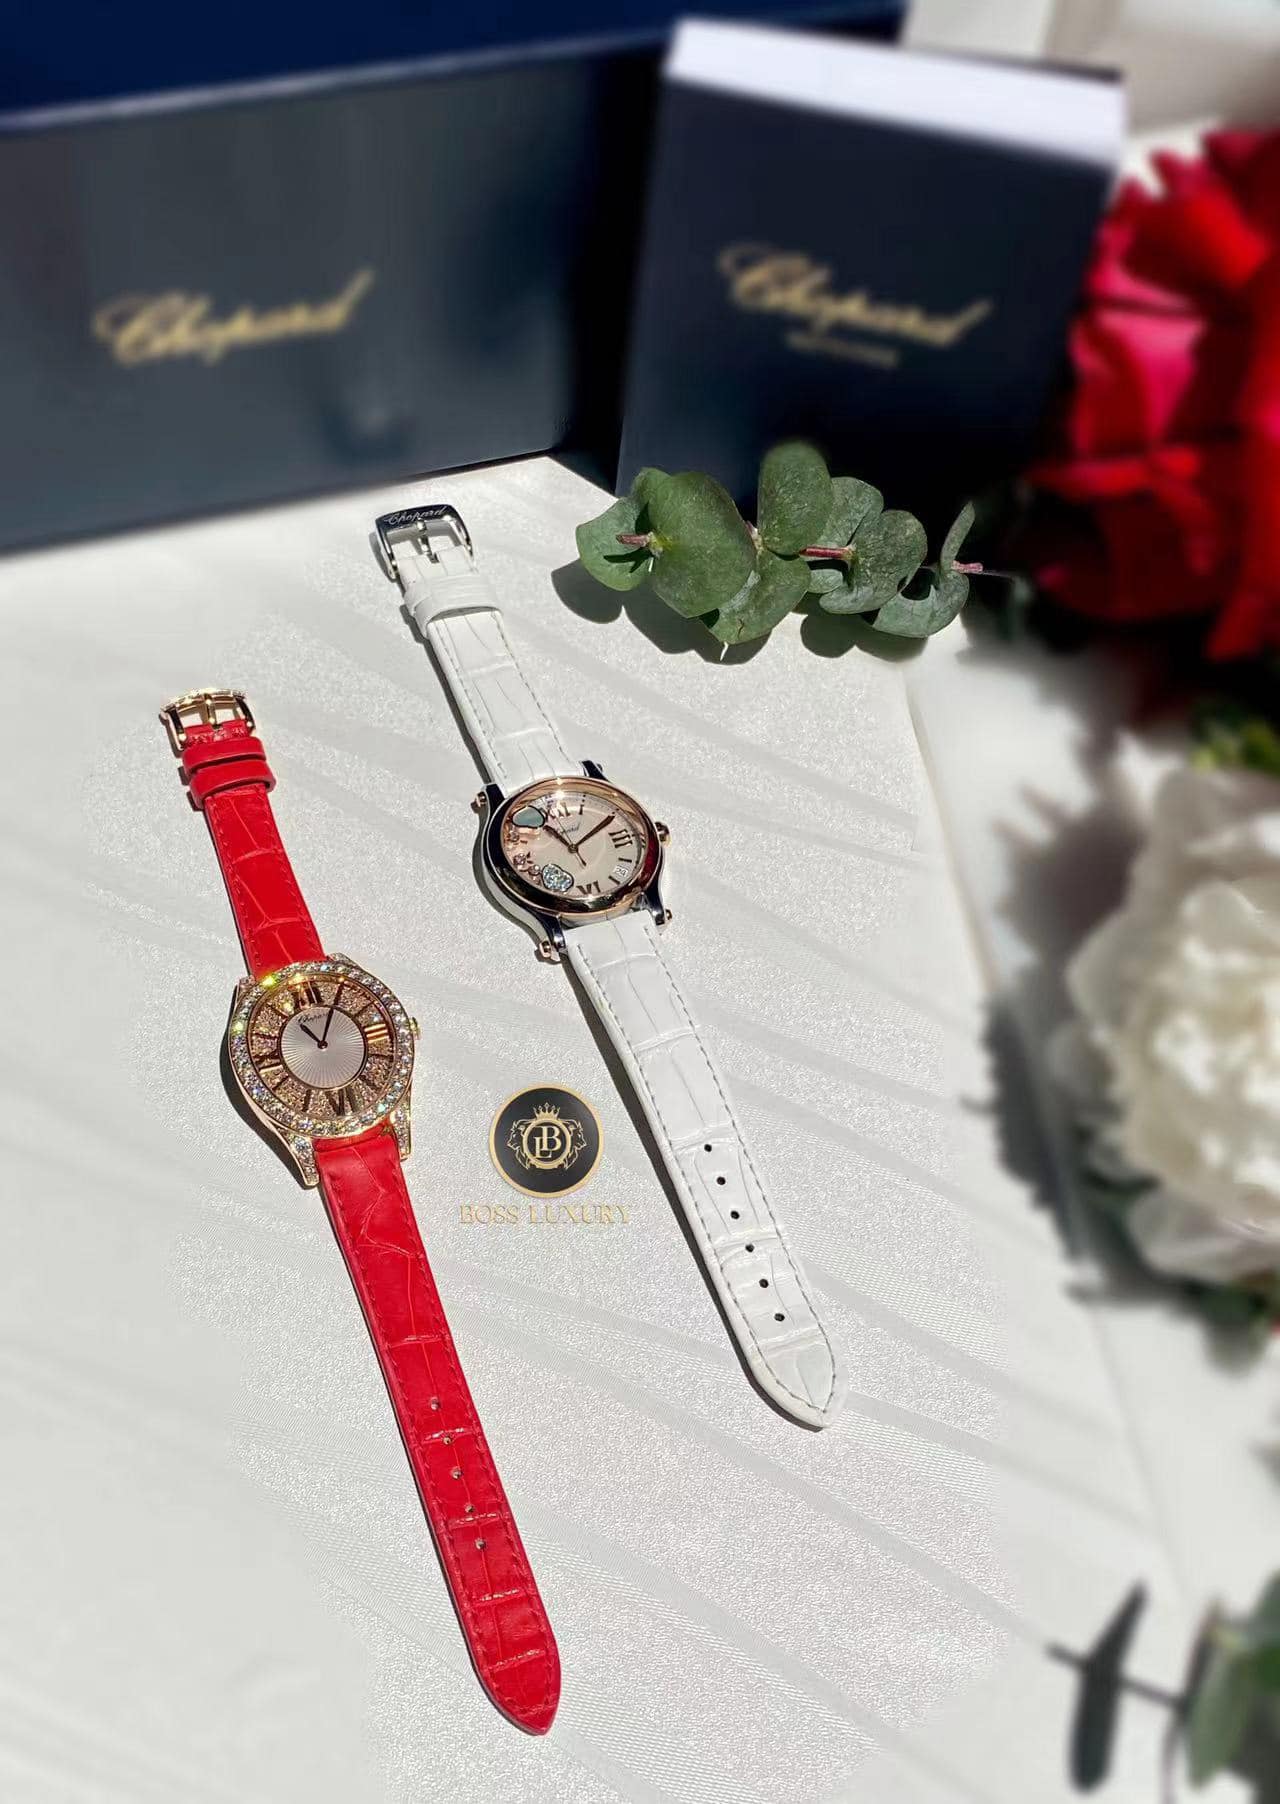 Đồng hồ Chopard - Thương hiệu đồng hồ đeo tay danh tiếng tại Thụy Sĩ